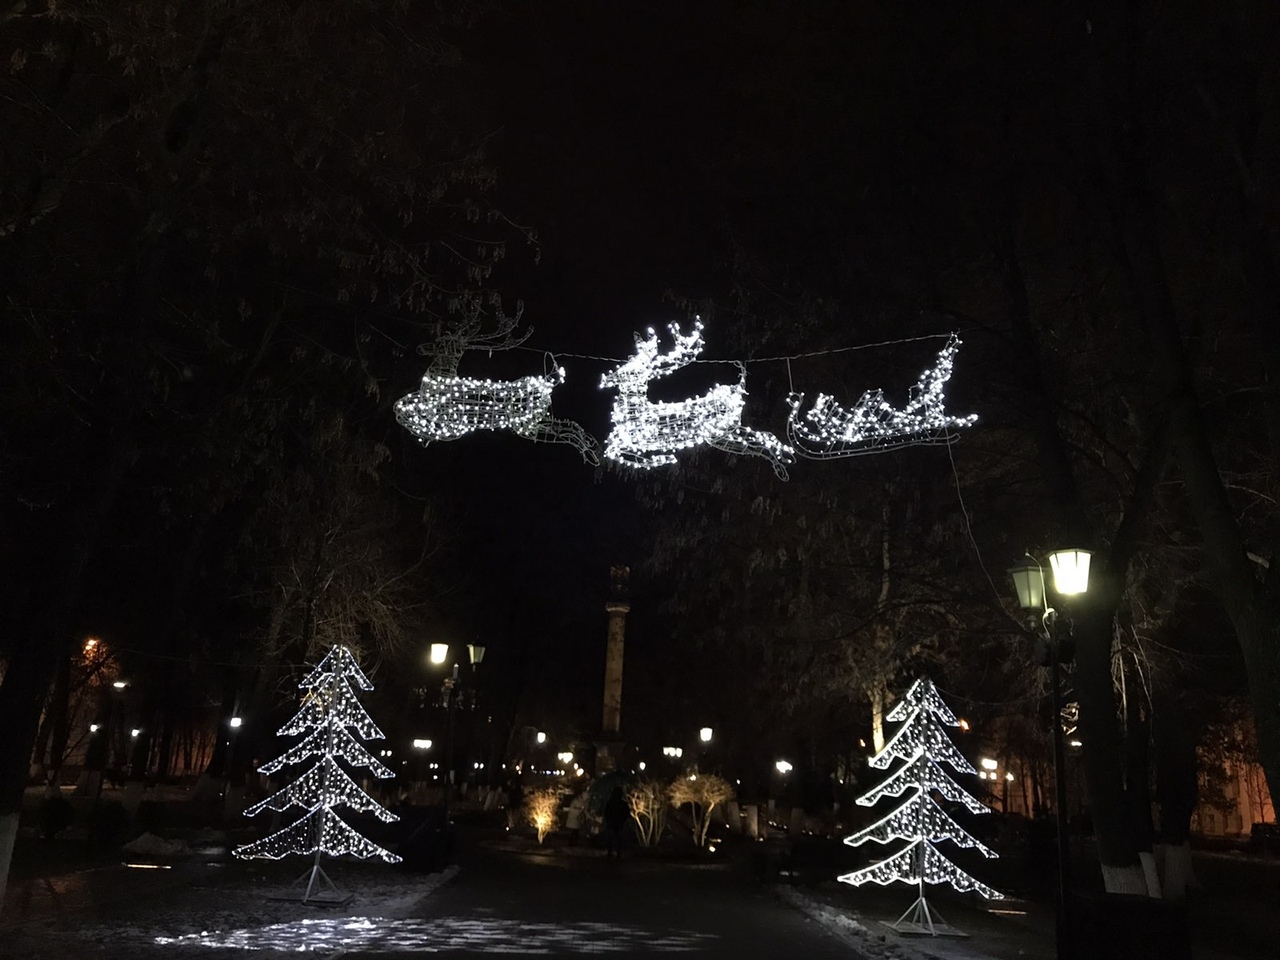 «Баклажан и олень»: ярославцев возмутило новогоднее украшение города с перегоревшими лампочками